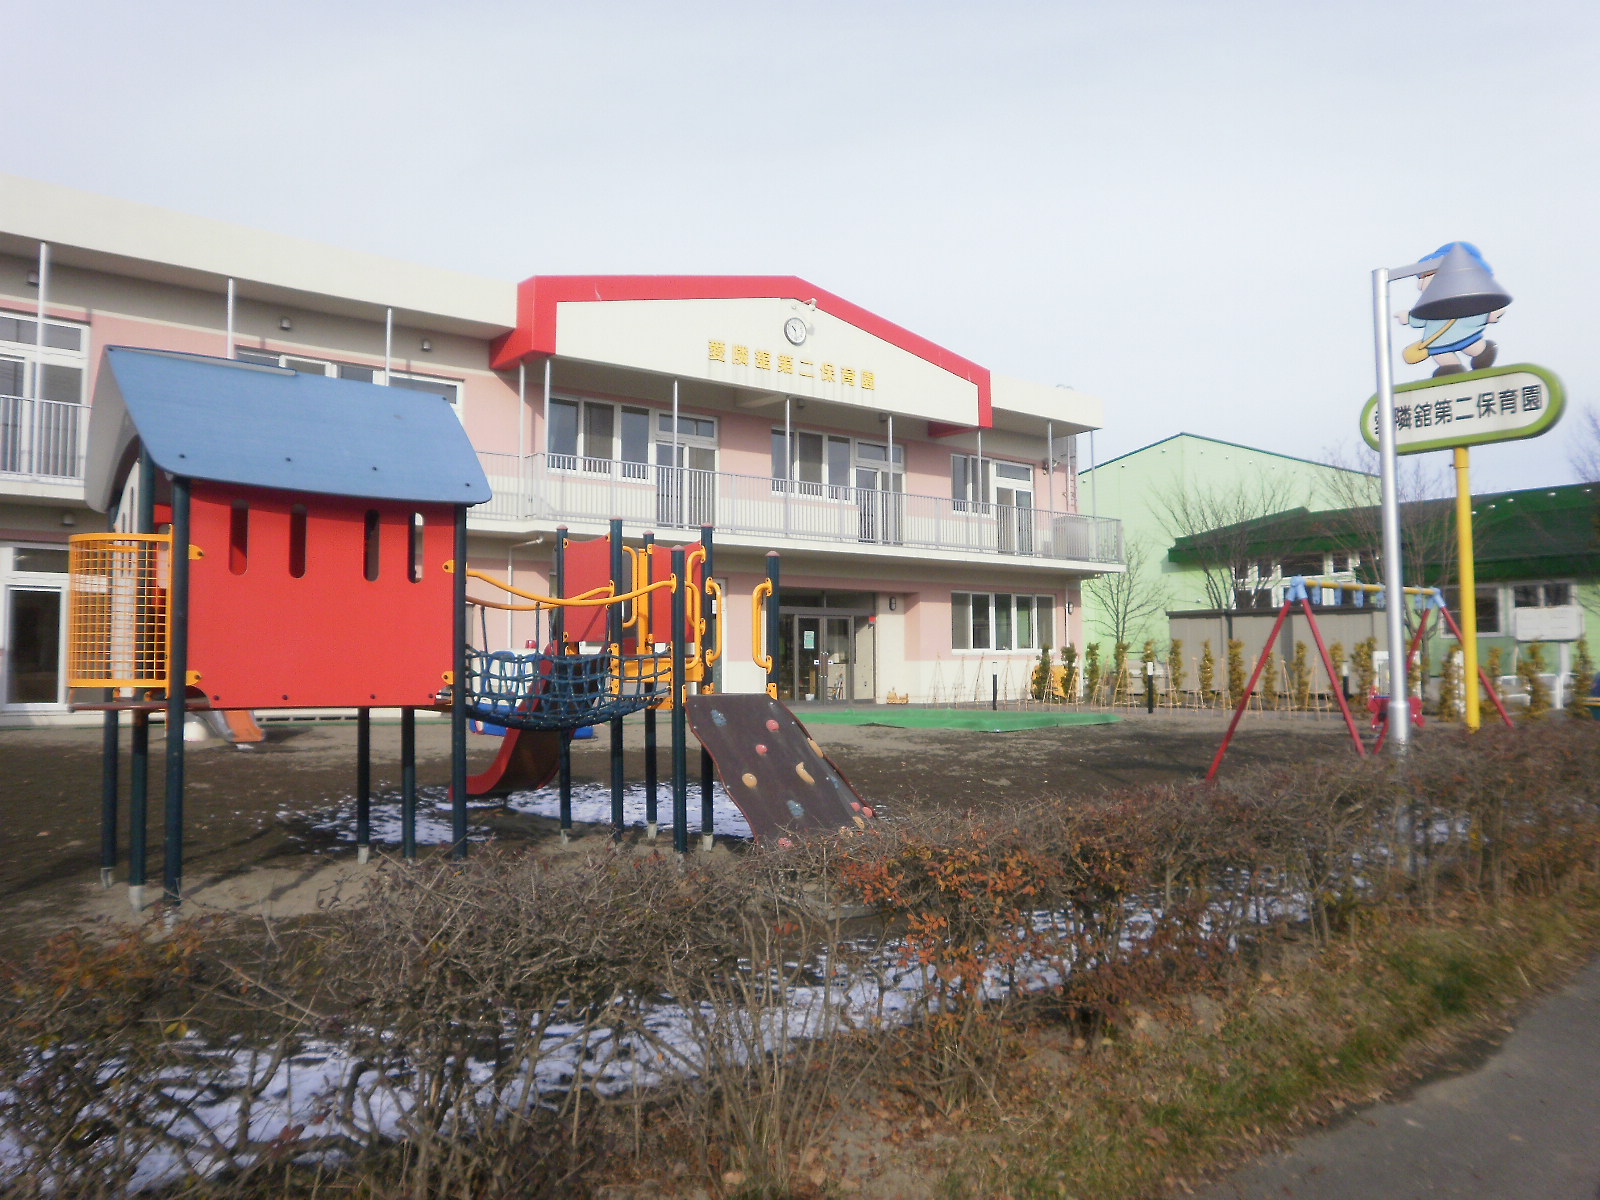 kindergarten ・ Nursery. Sapporo Isleinn Tachi second nursery school (kindergarten ・ 323m to the nursery)